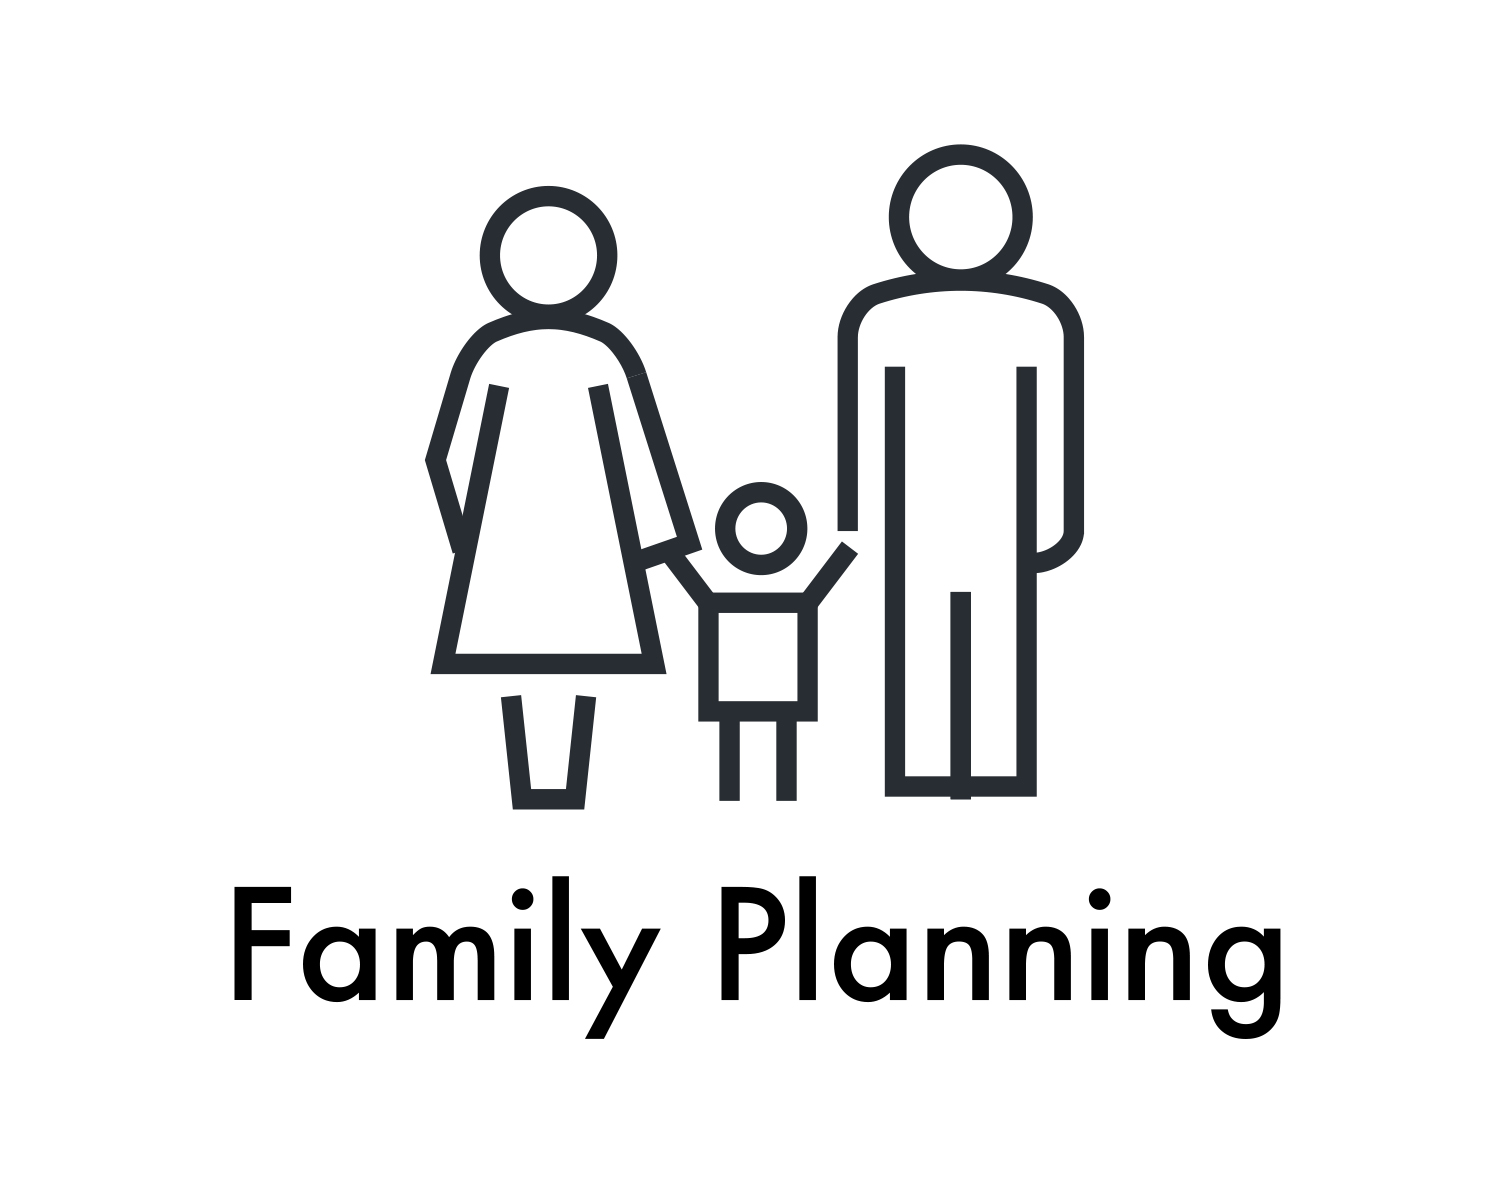 Family Planning.jpg